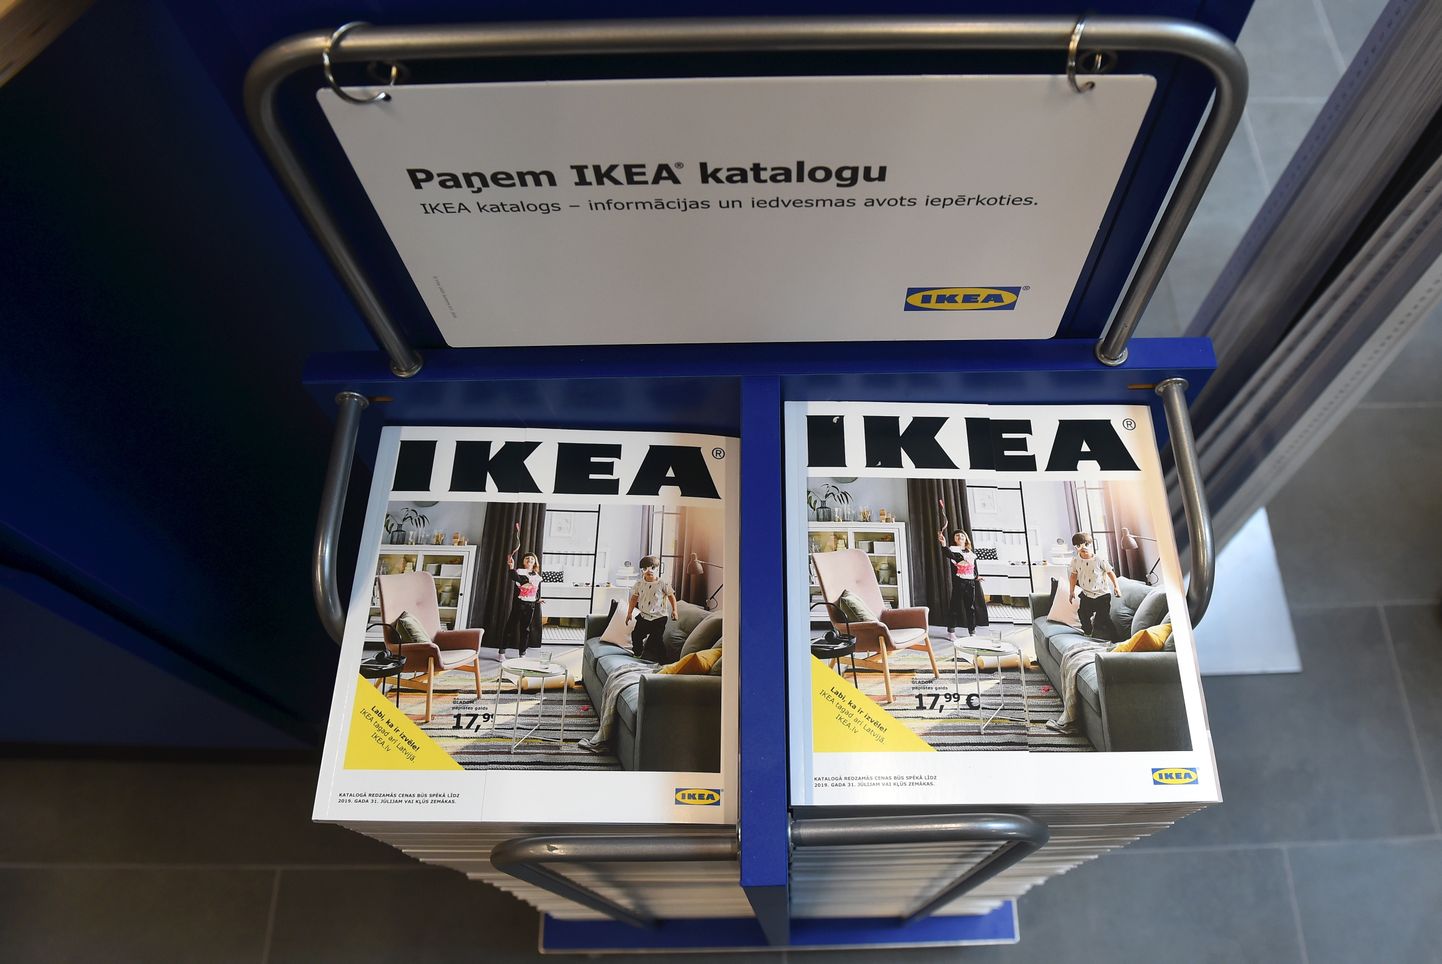 Zviedrijas mājokļu labiekārtošanas preču kompānijas "IKEA" lielveikala atklāšanas pasākums.